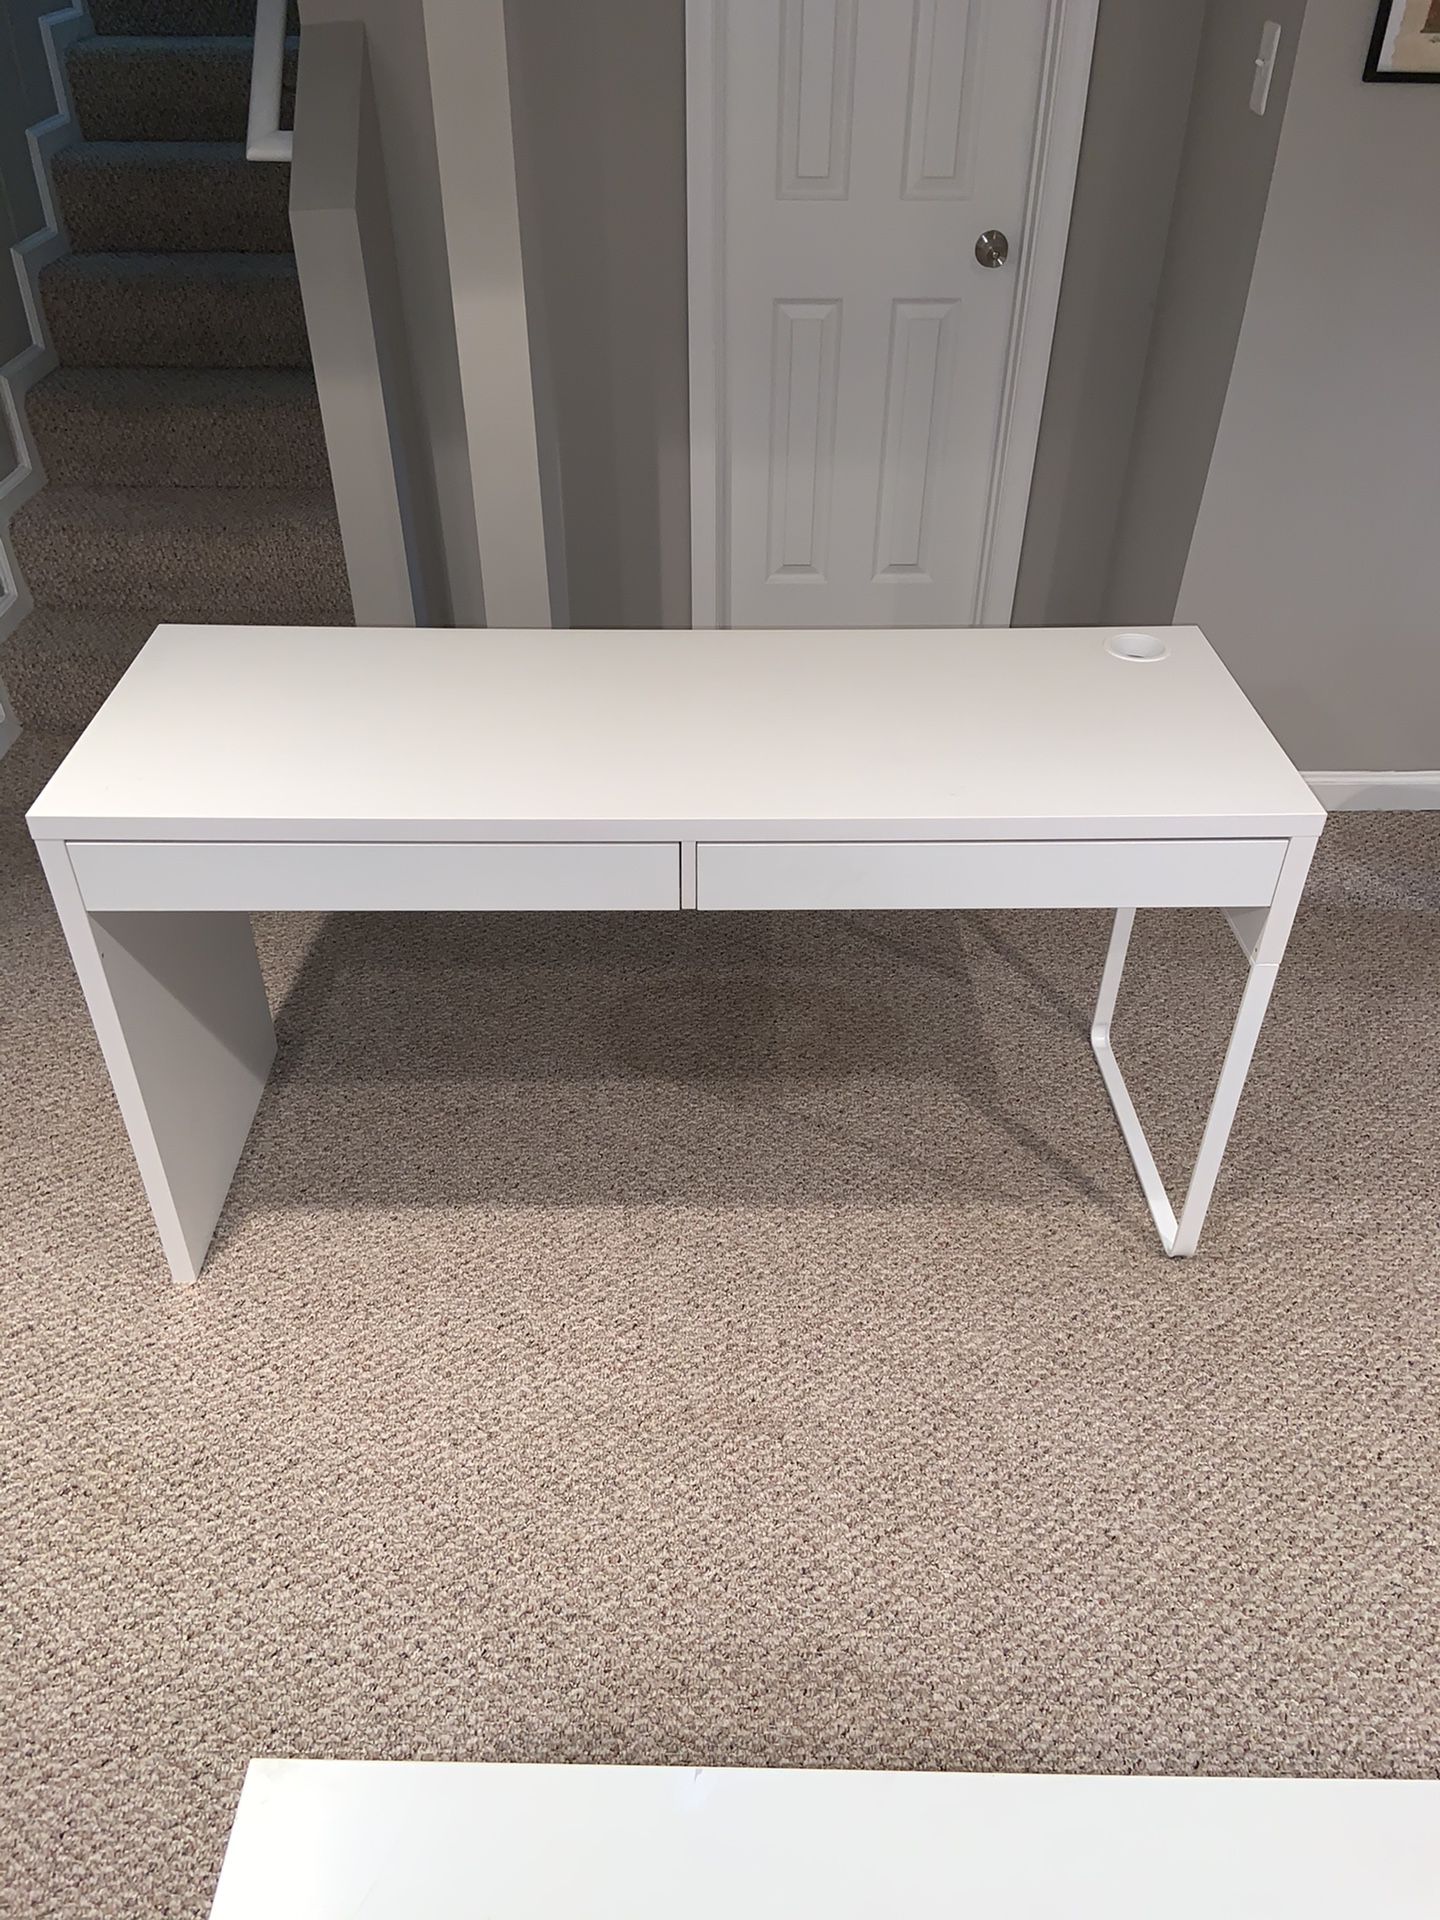 Almost-new IKEA Desk